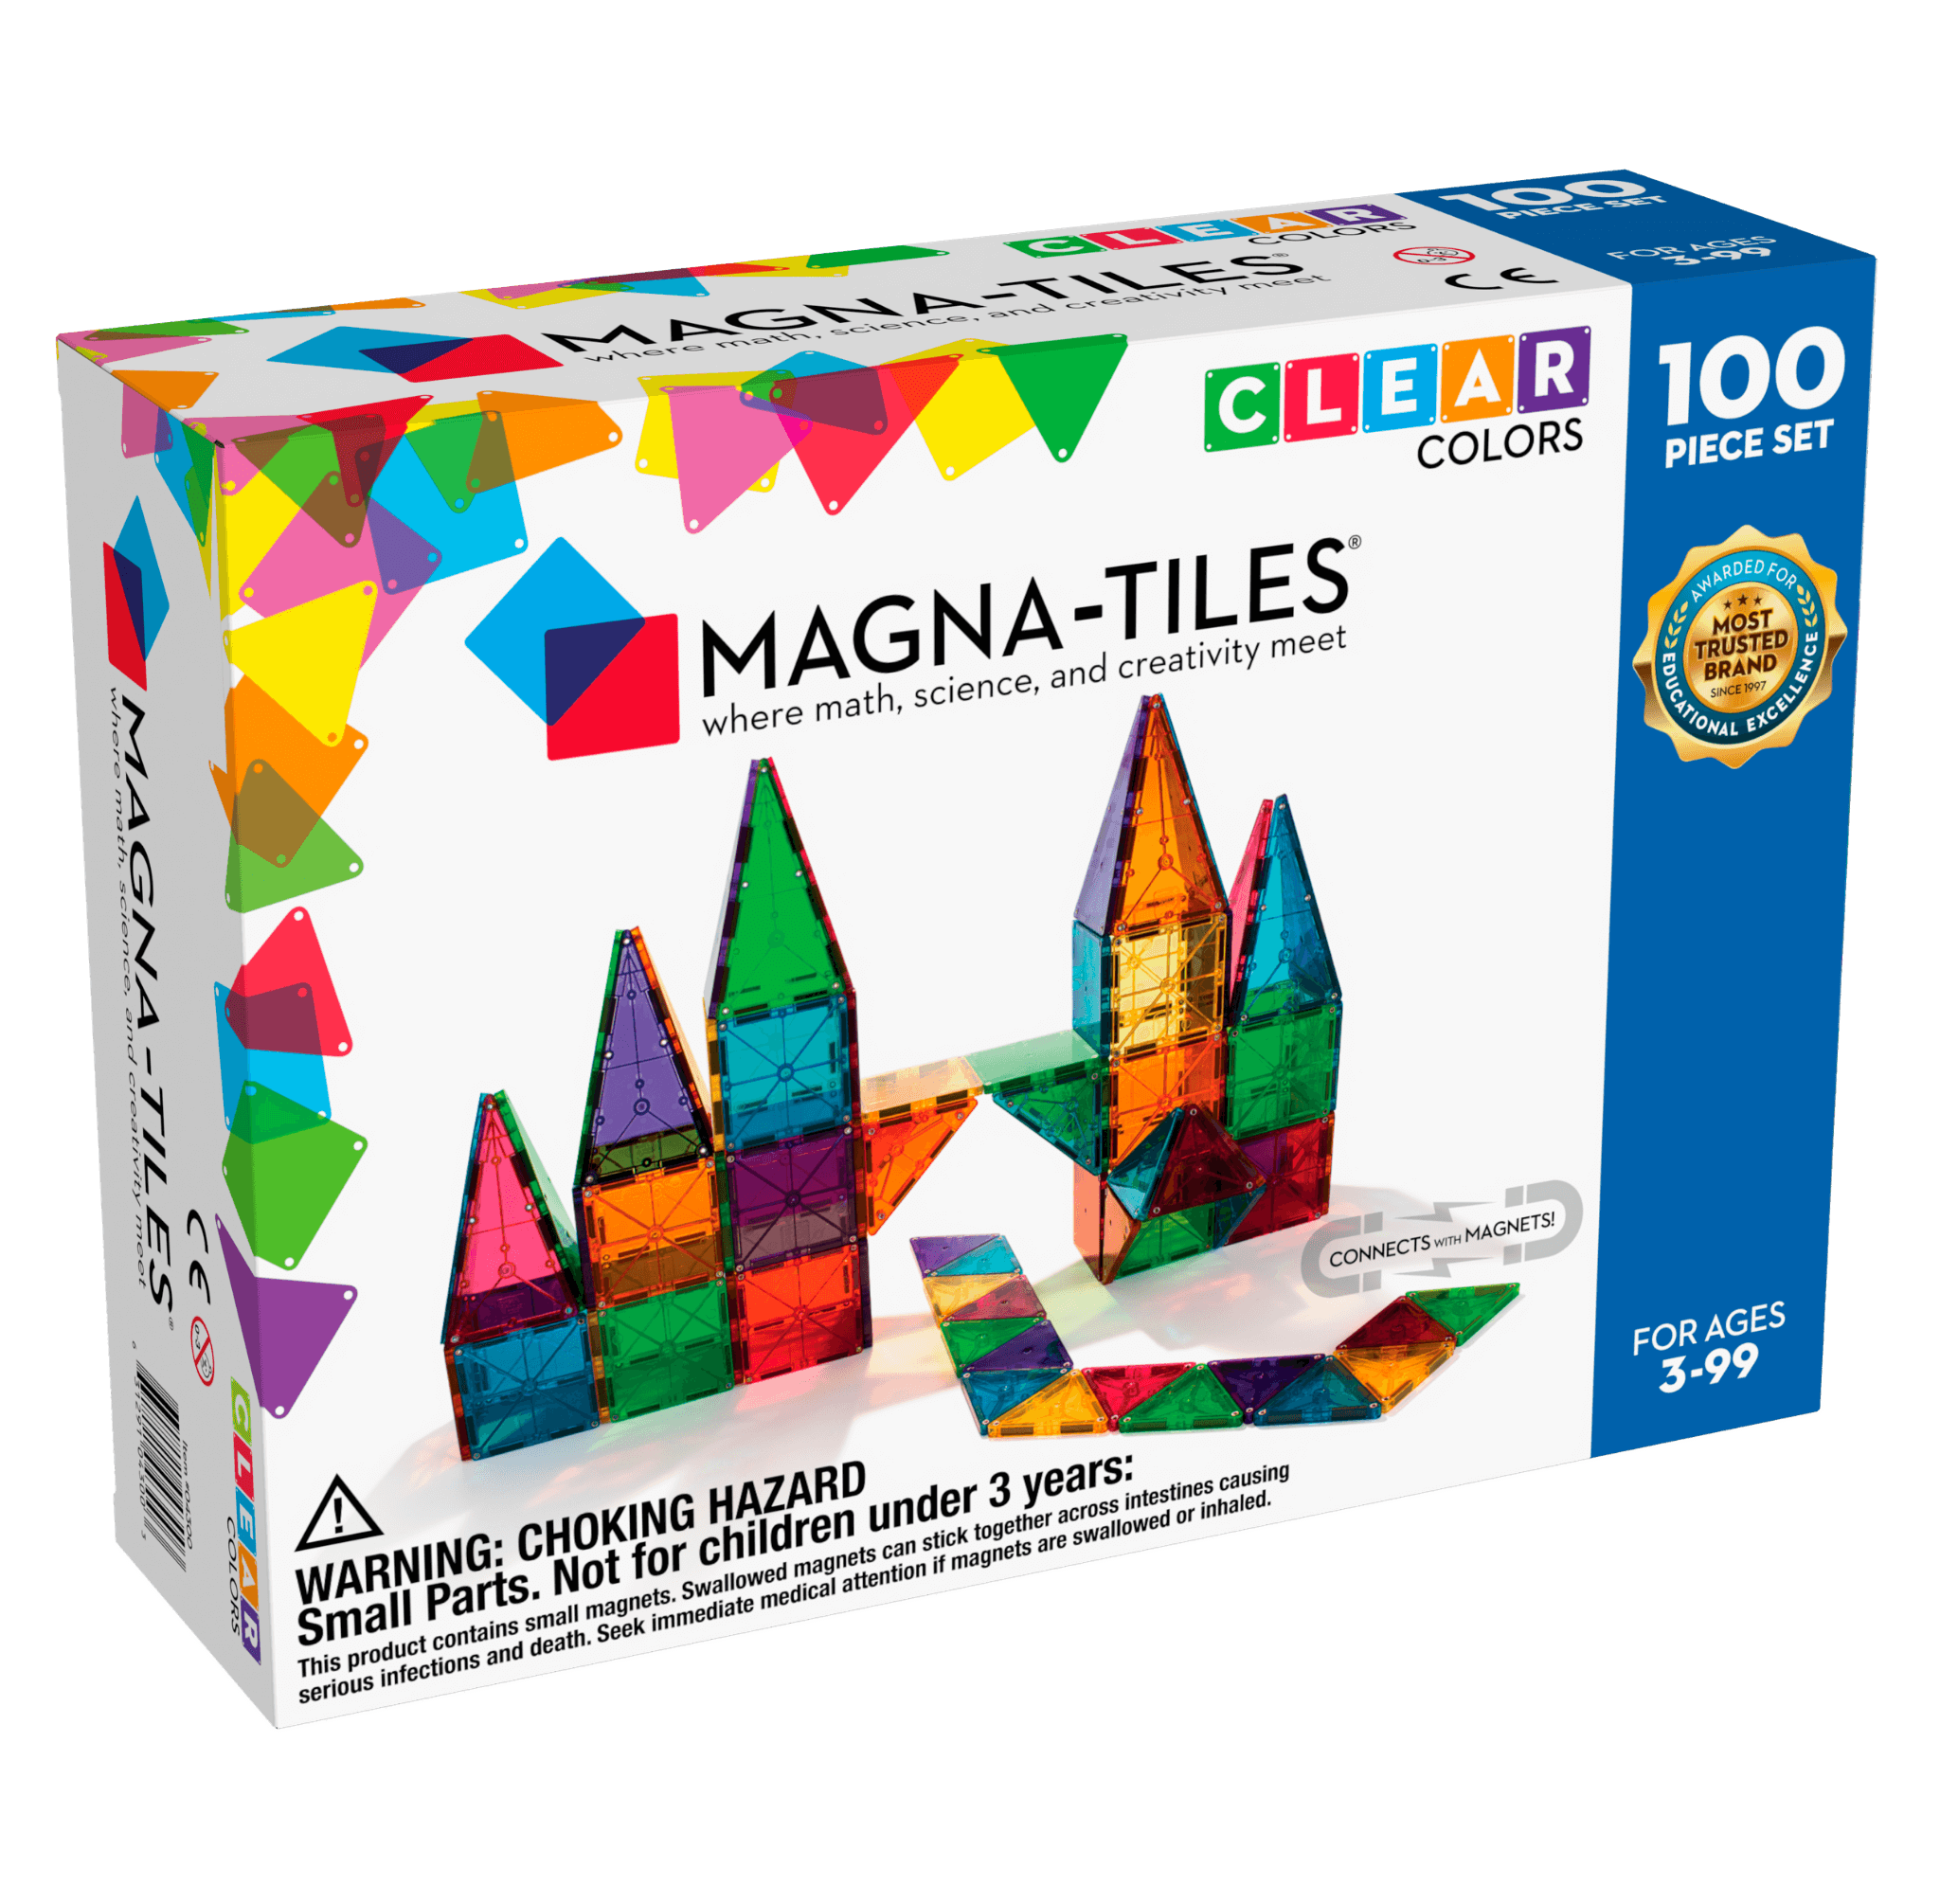 https://pitterpattershop.com/cdn/shop/products/magna-tilesr-clear-colors-100-piece-set-196-toys-child-magnatiles-328708.webp?v=1657334109